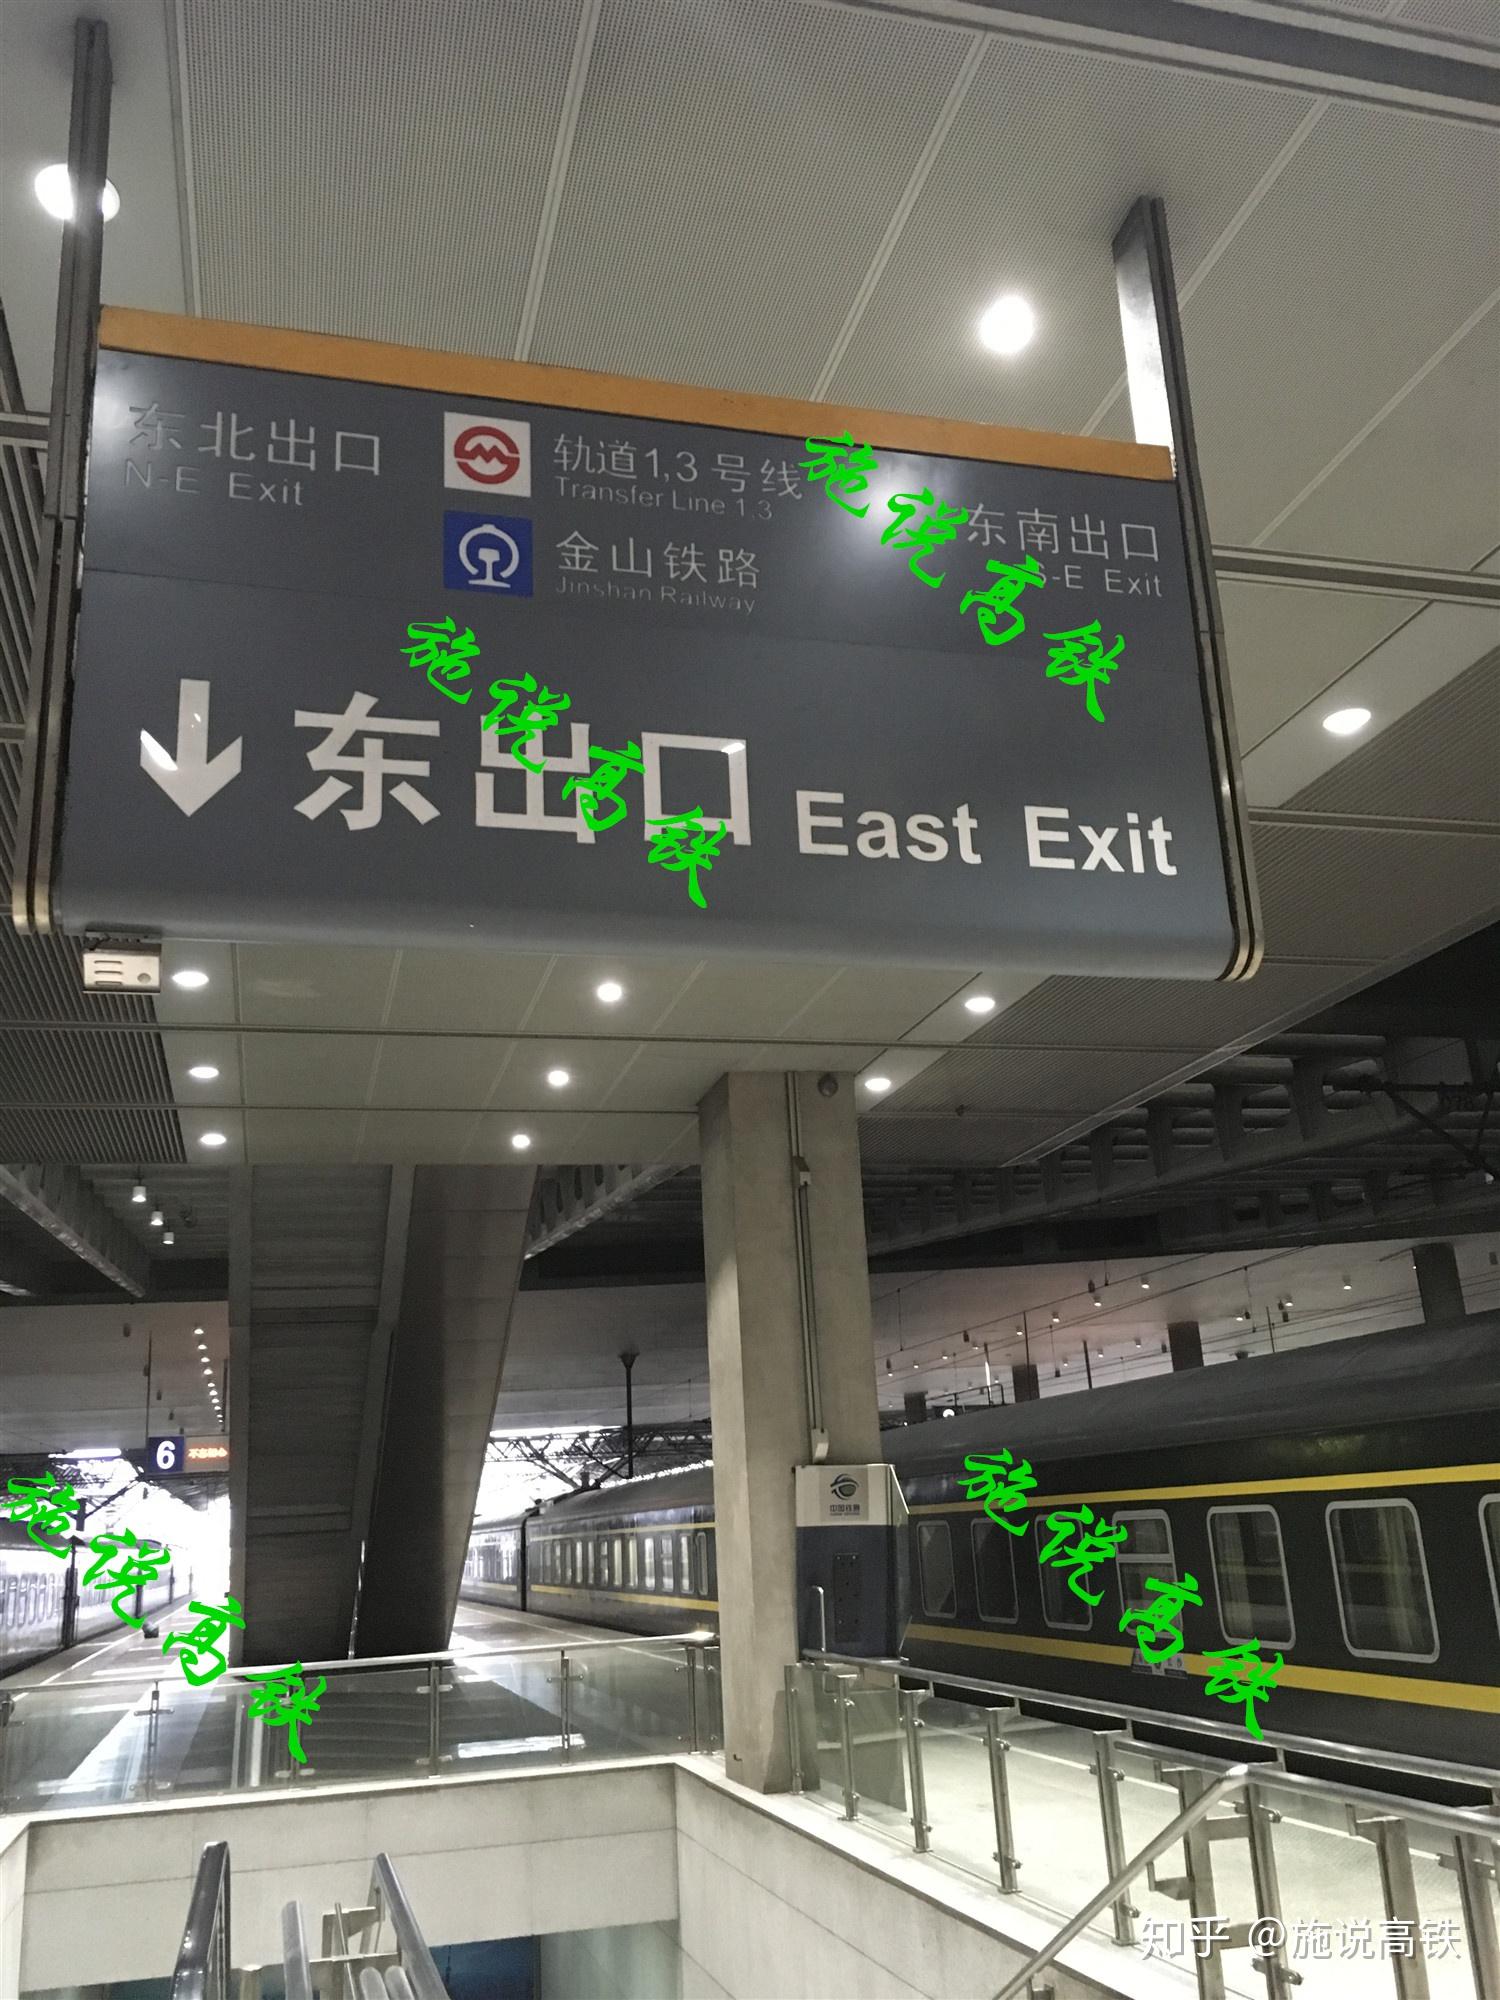 上海南站除了引入沪昆高铁外,还将引入? 